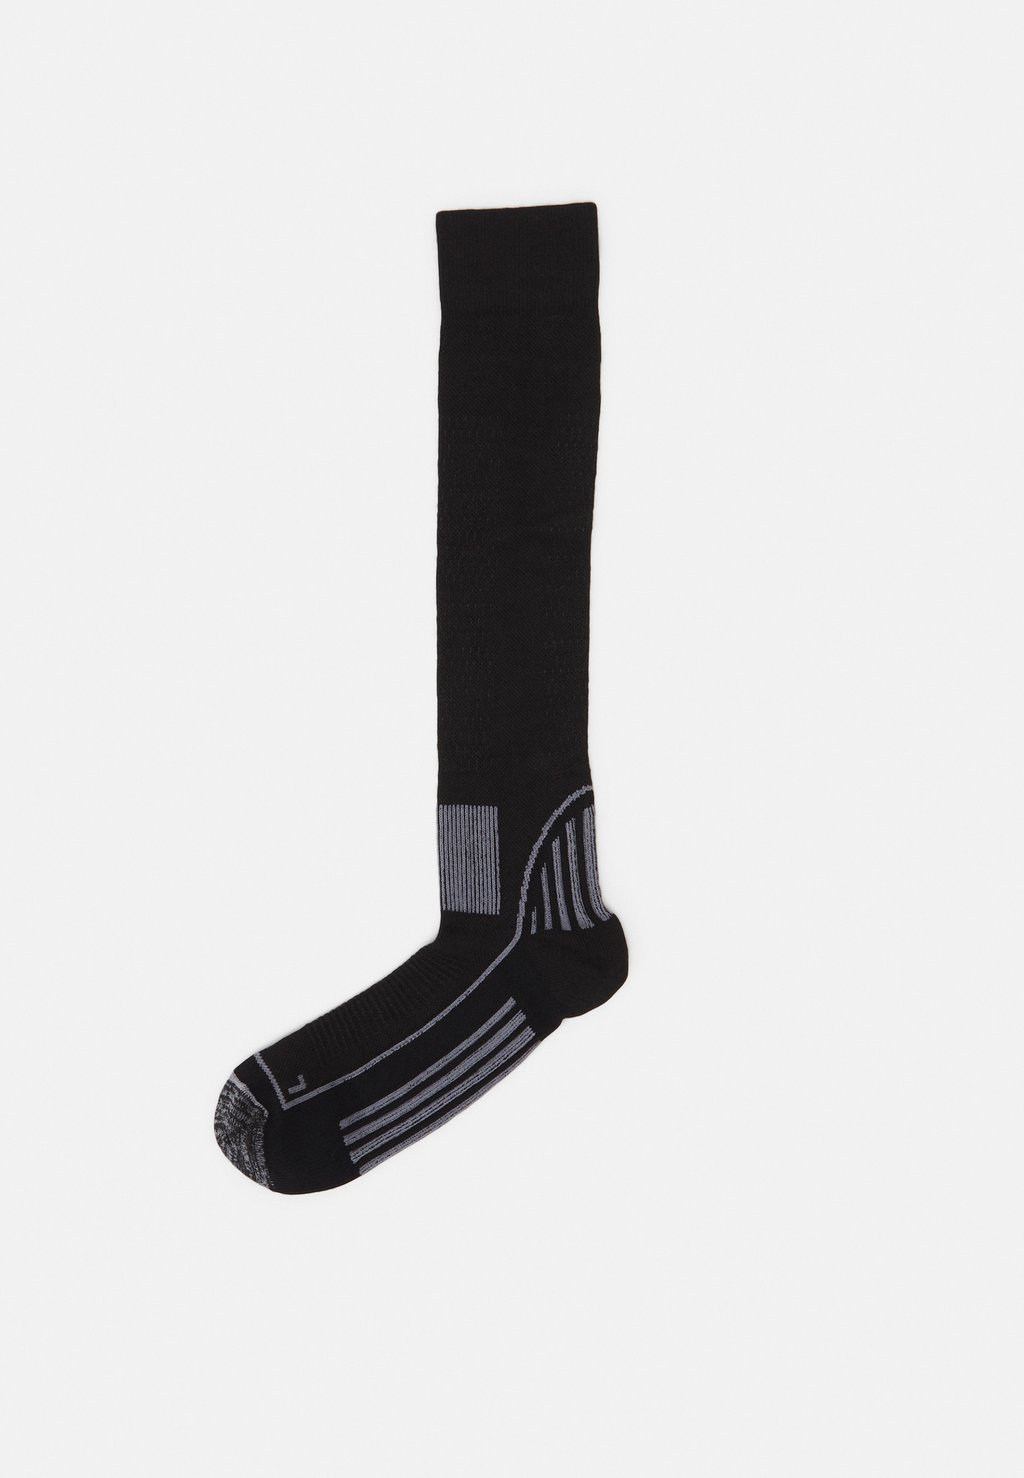 спортивные носки 6 pack unisex adidas performance цвет grey melange Спортивные носки Ski Sock Unisex Peak Performance, цвет black/grey melange